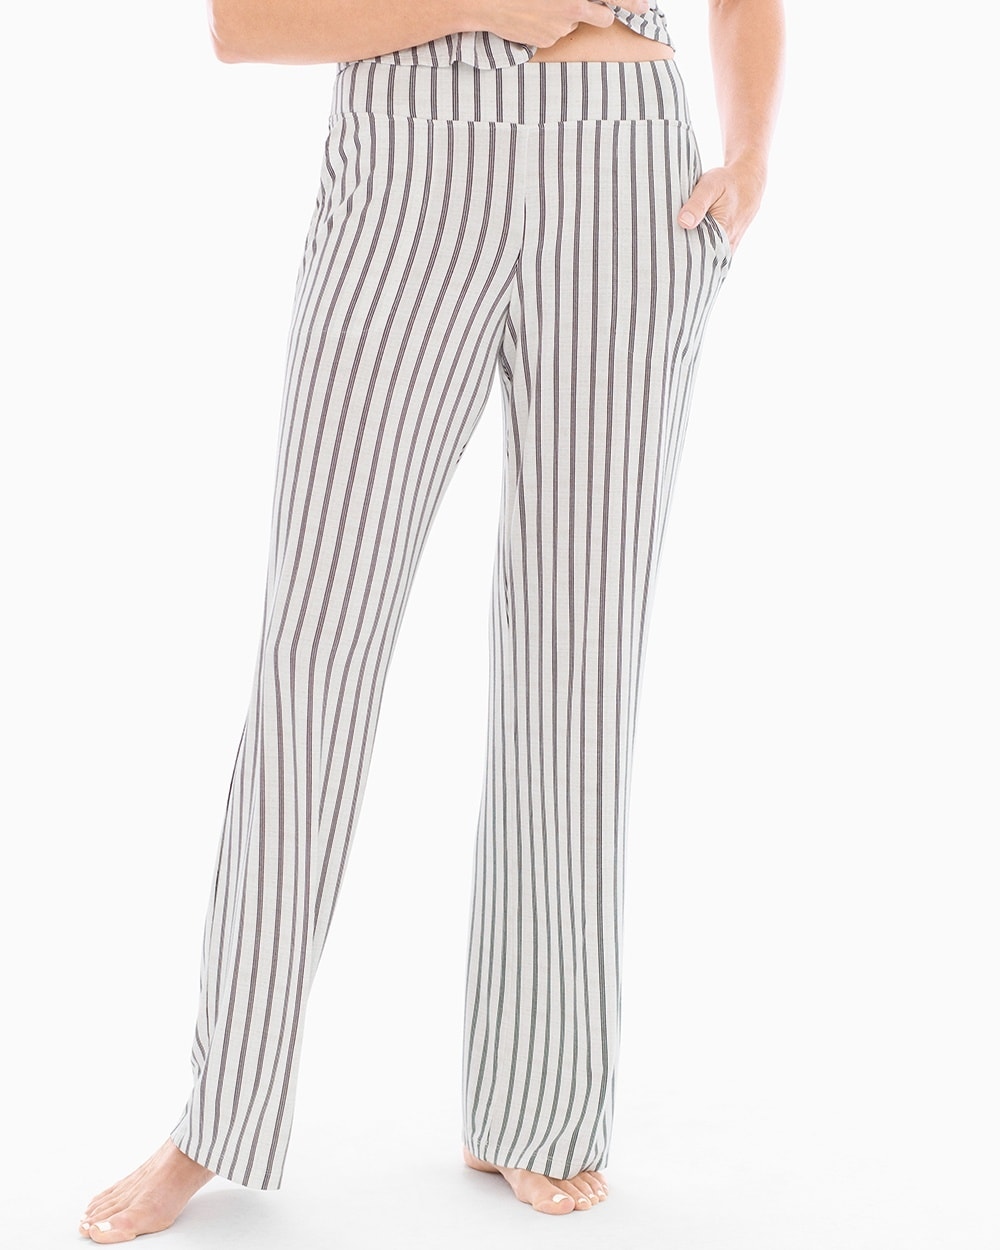 Cool Nights Pajama Pants Heritage Stripe Ivory TL